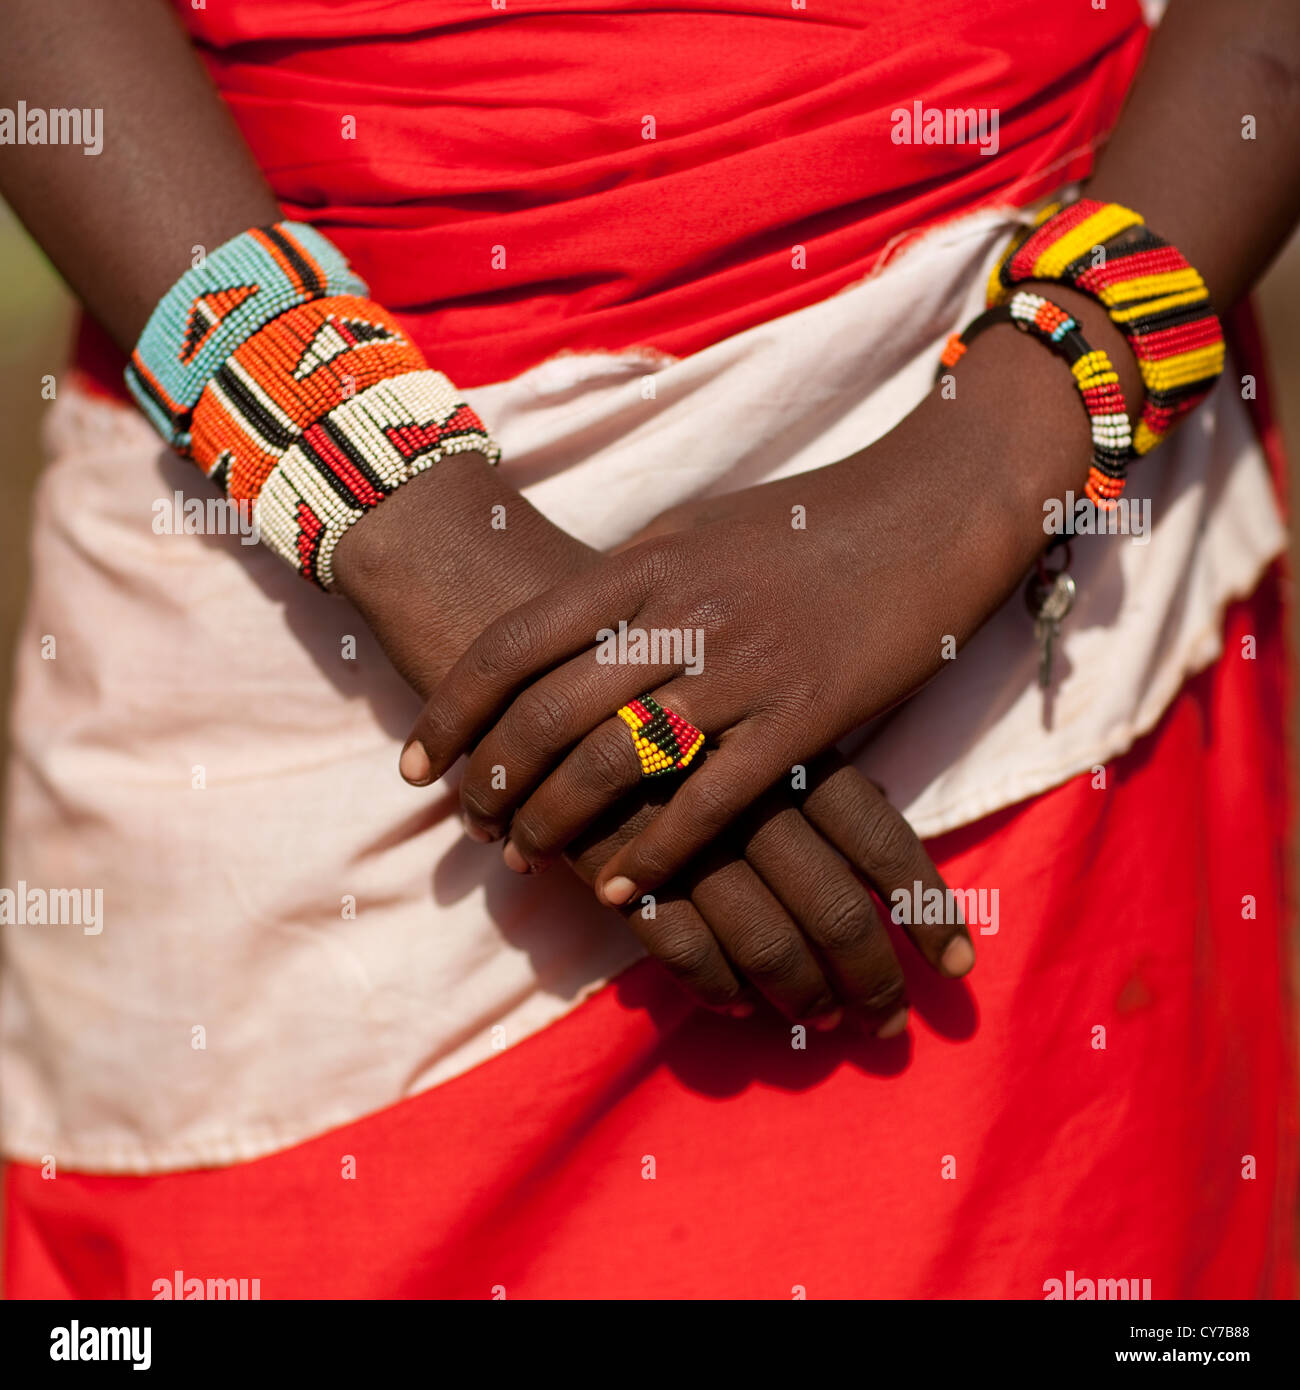 Rendille Tribe, Kenya Stock Photo